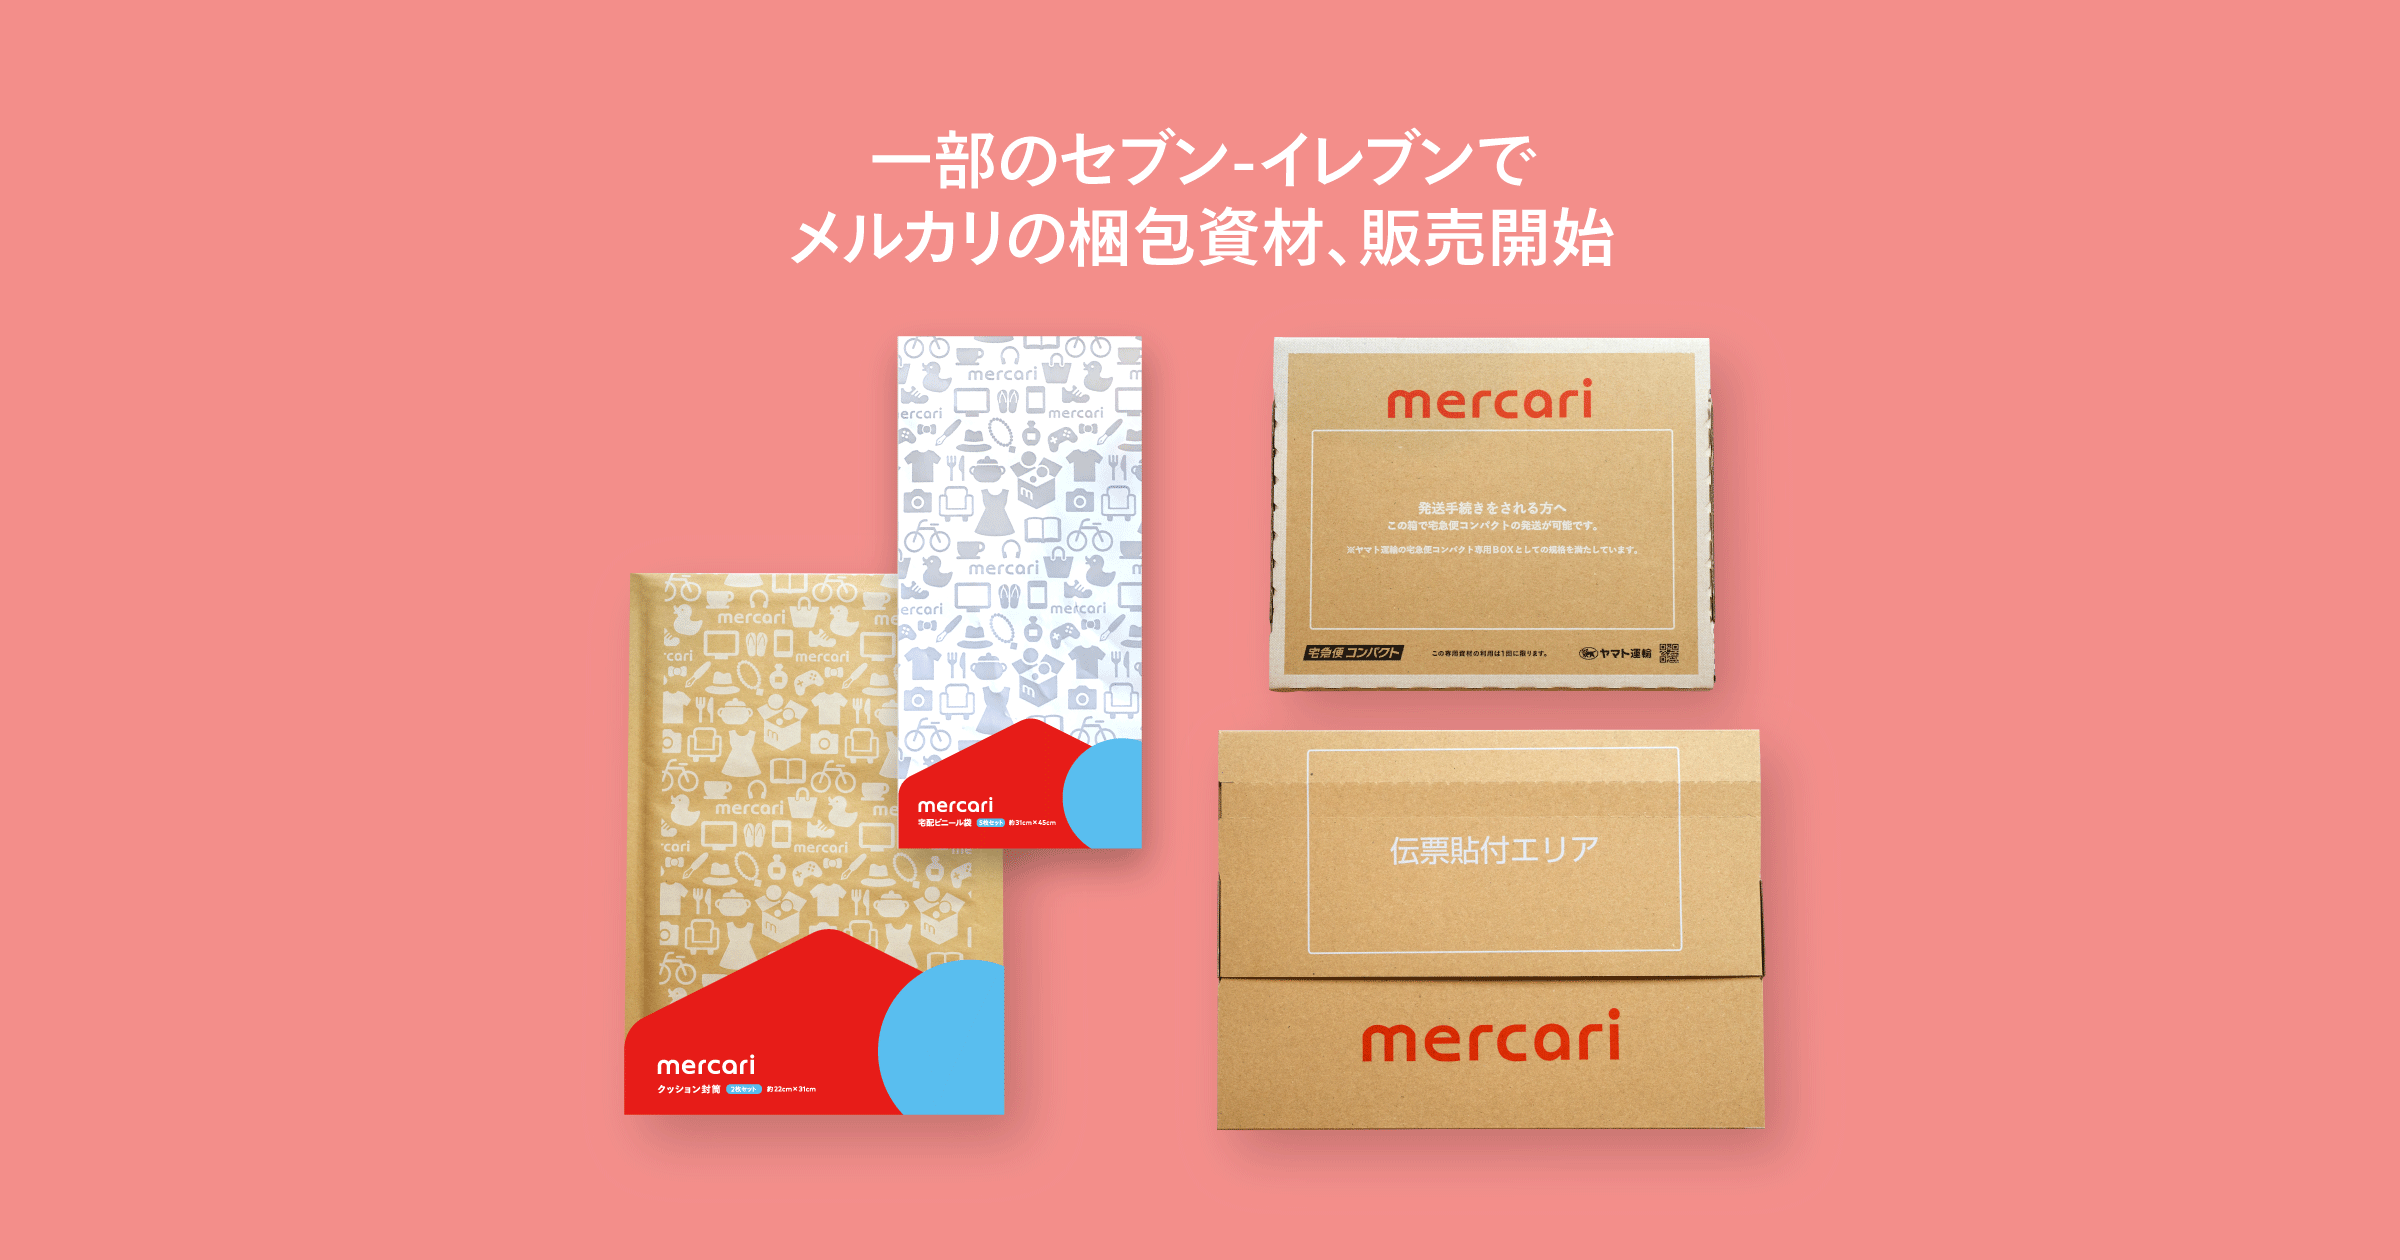 山梨県 兵庫県内のセブン イレブン一部店舗でメルカリの梱包資材のテスト販売を開始しました メルカリびより 公式サイト